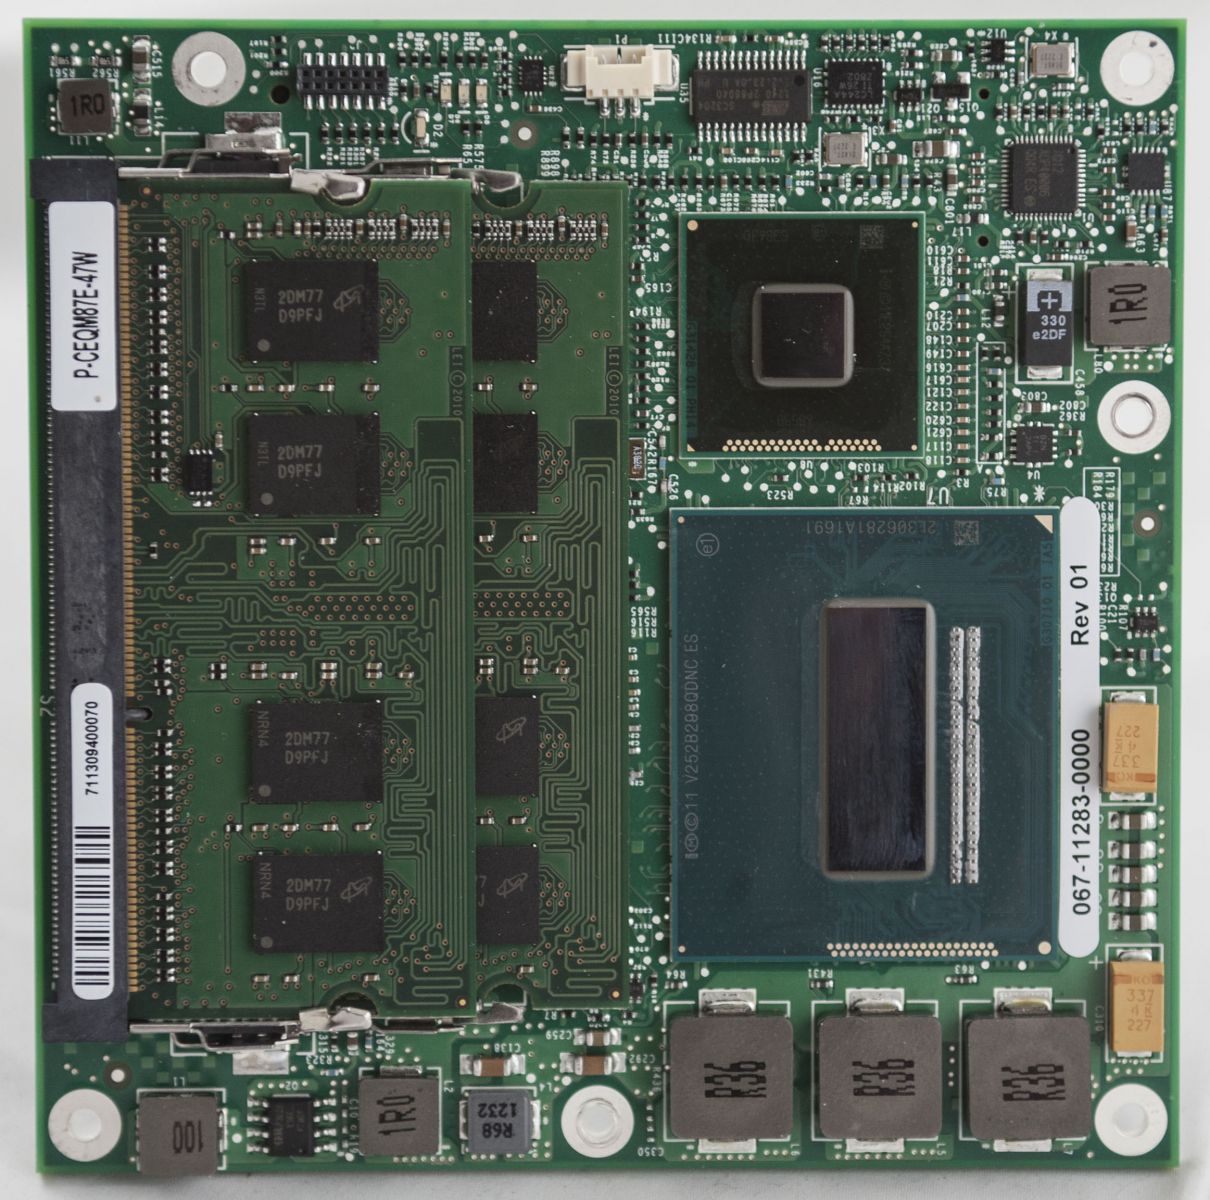 внешний вид компьютера CEQM87 на базе процессора Intel Haswell